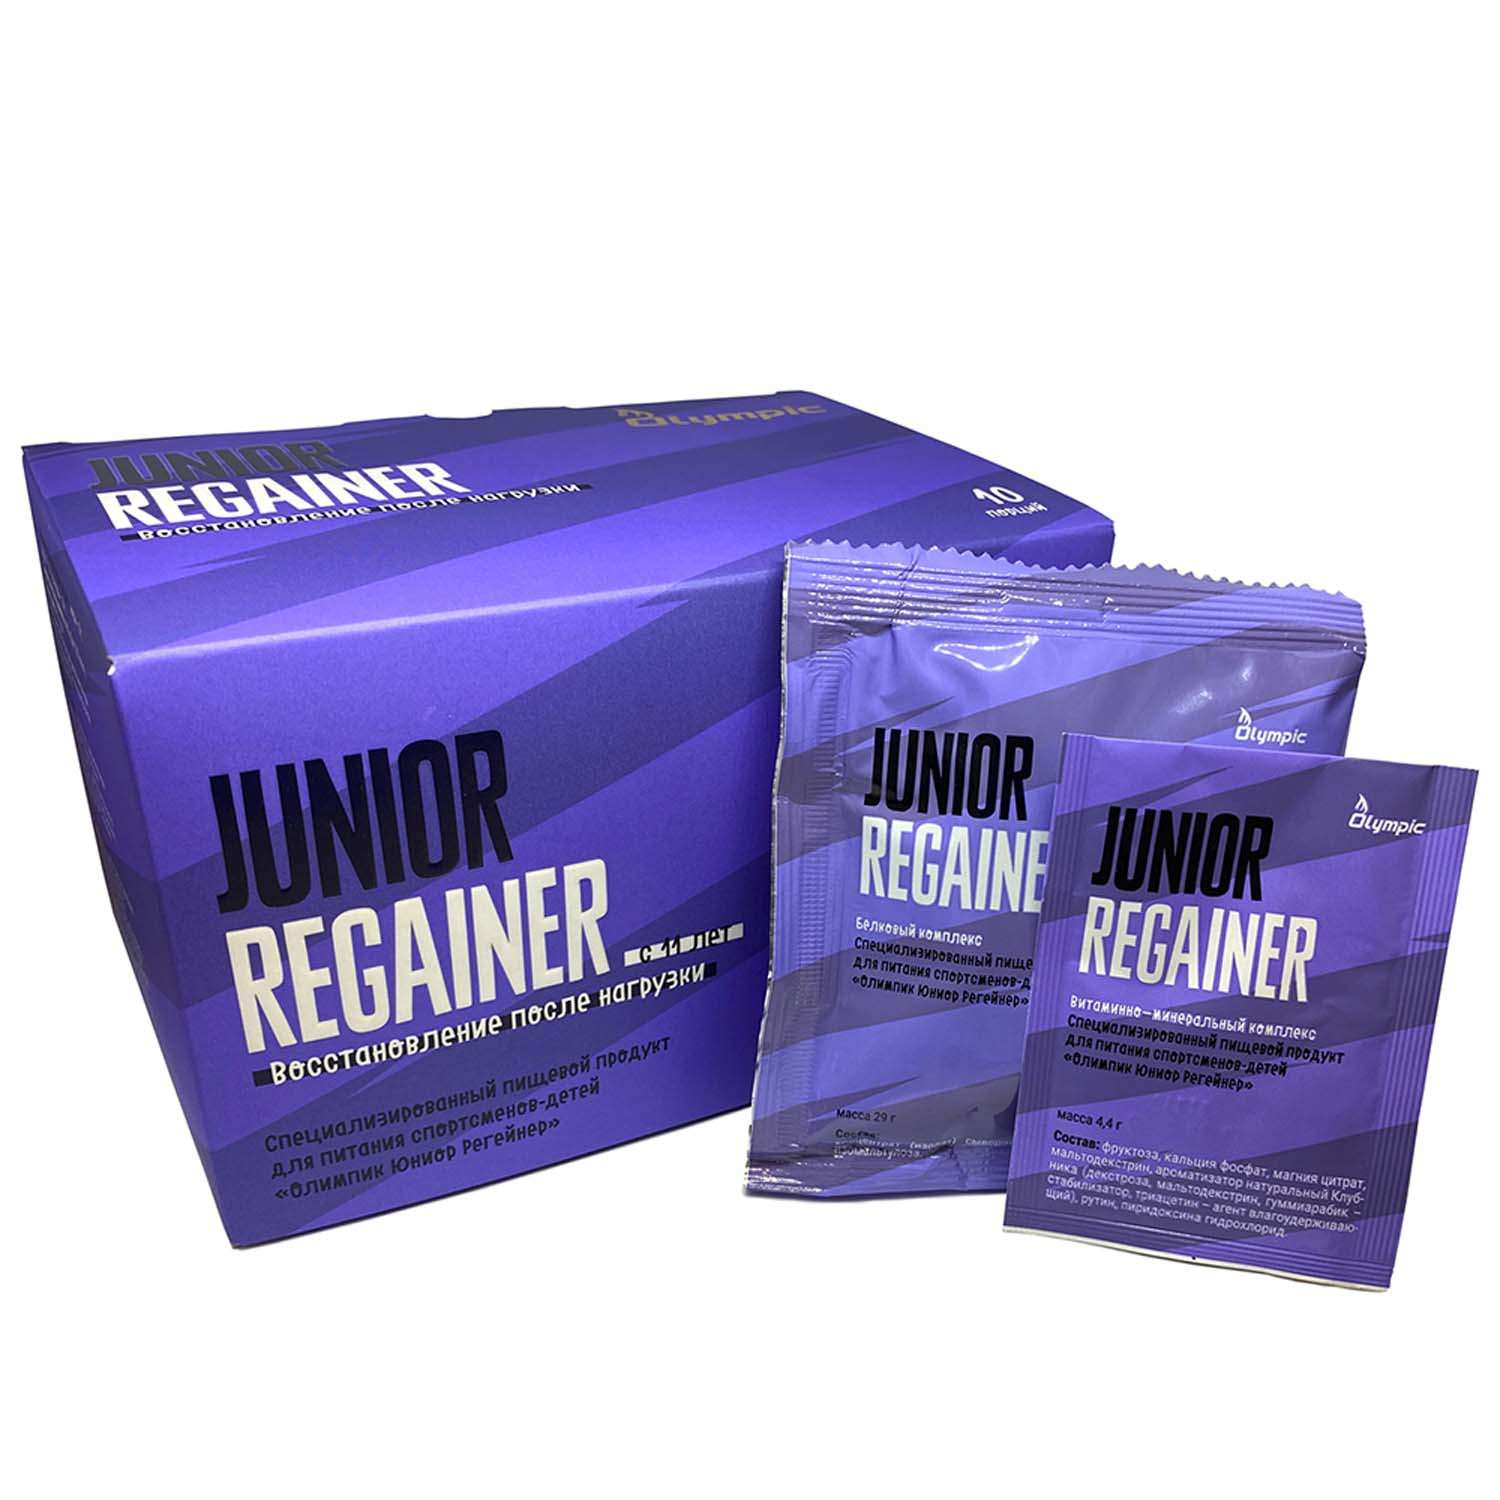 Белково-углеводный коктейль Olympic Junior Regainer 29г и 4.4г*20пакетиков - фото 2